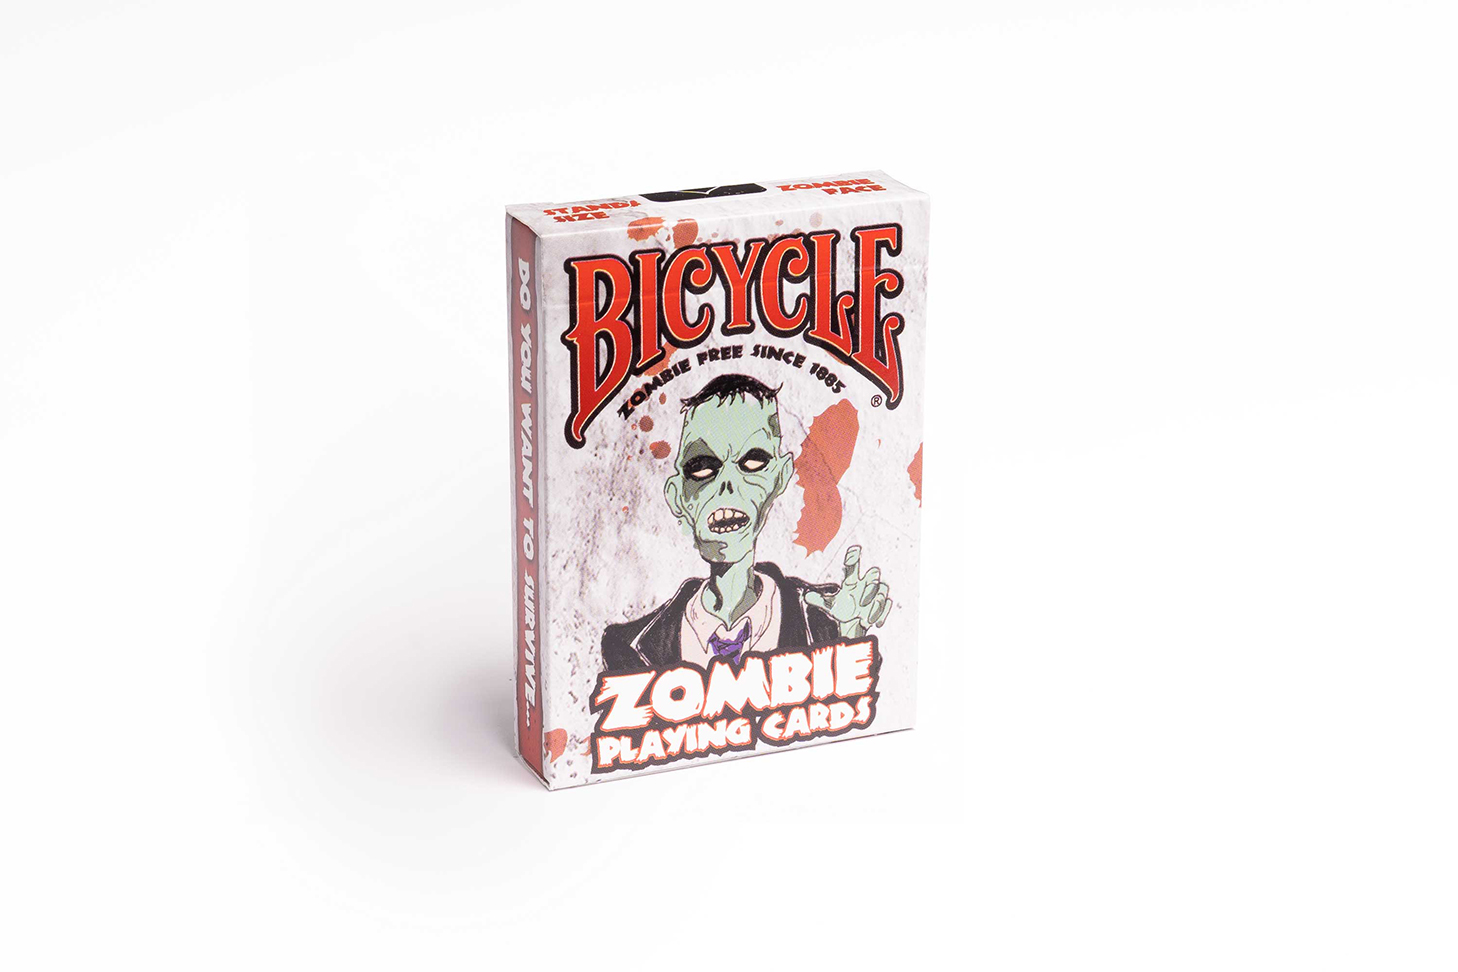 Premium Zombie Spielkarten von Bicycle mit beeindruckendem Design. Das Bicycle® Zombie wird durch gruselige Zombie-Elemente dargestellt, die perfekt für Fans von Horror und Magie sind. Ideal für Kartenspiele und Zaubershows. Holen Sie sich jetzt diese edlen Spielkarten für Ihre nächste Spielrunde oder als Sammlerstück!